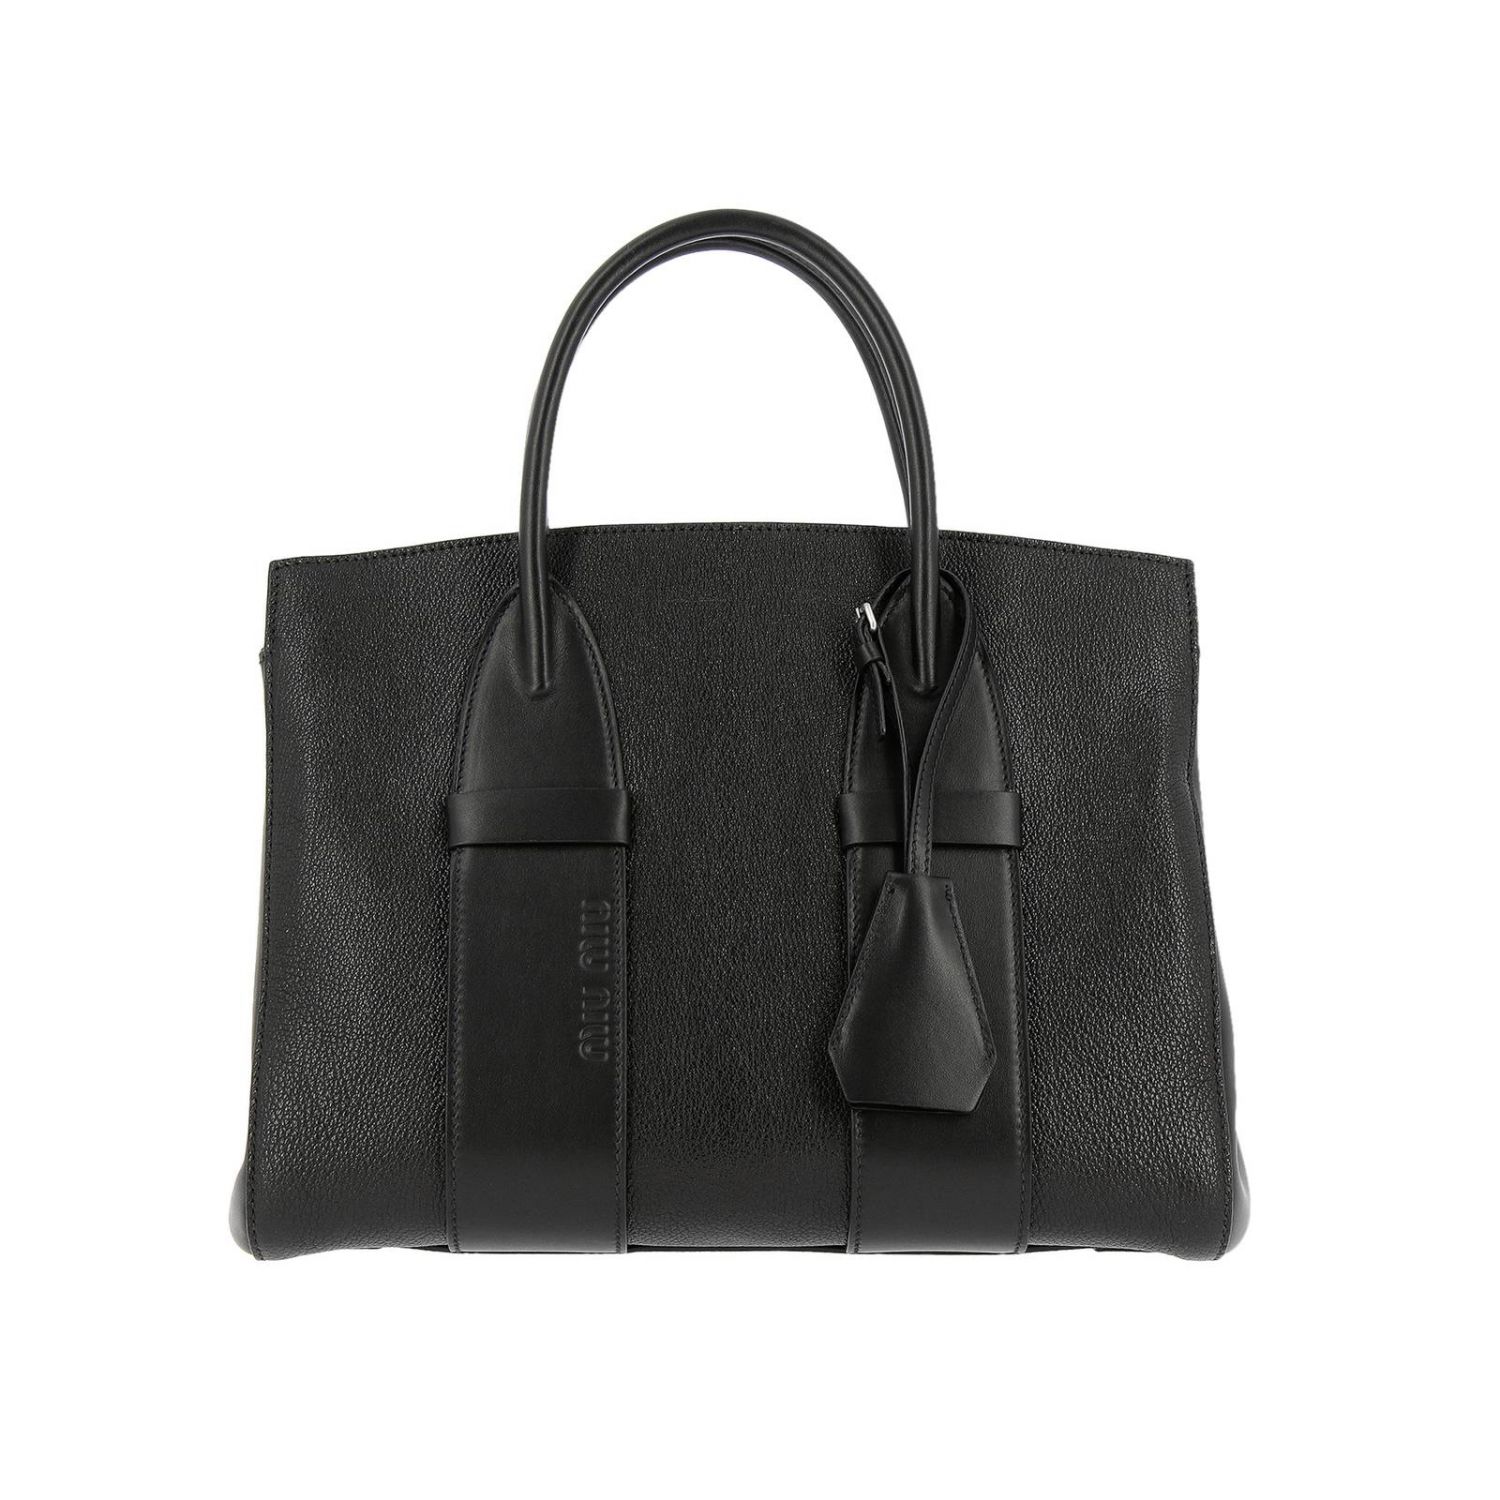 MIU MIU: handbag for woman - Black | Miu Miu handbag 5BA100 2B66 online ...